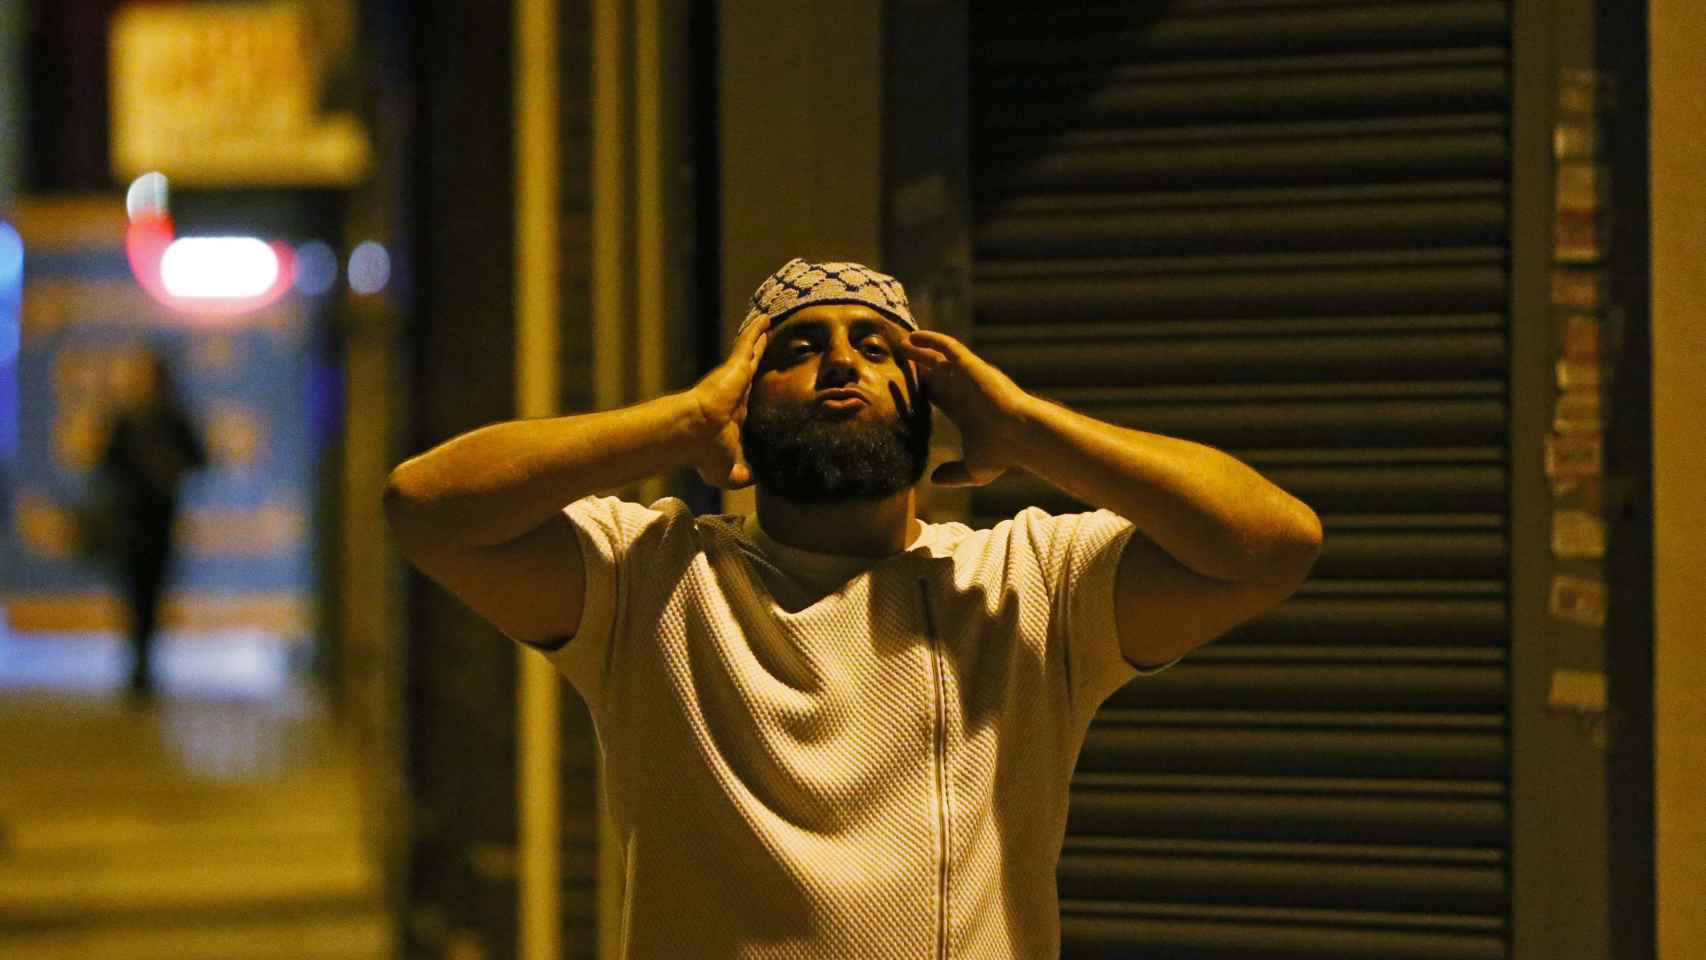 Un hombre musulmán se lleva las manos a la cabeza lamentándose por lo sucedido. / Reuters